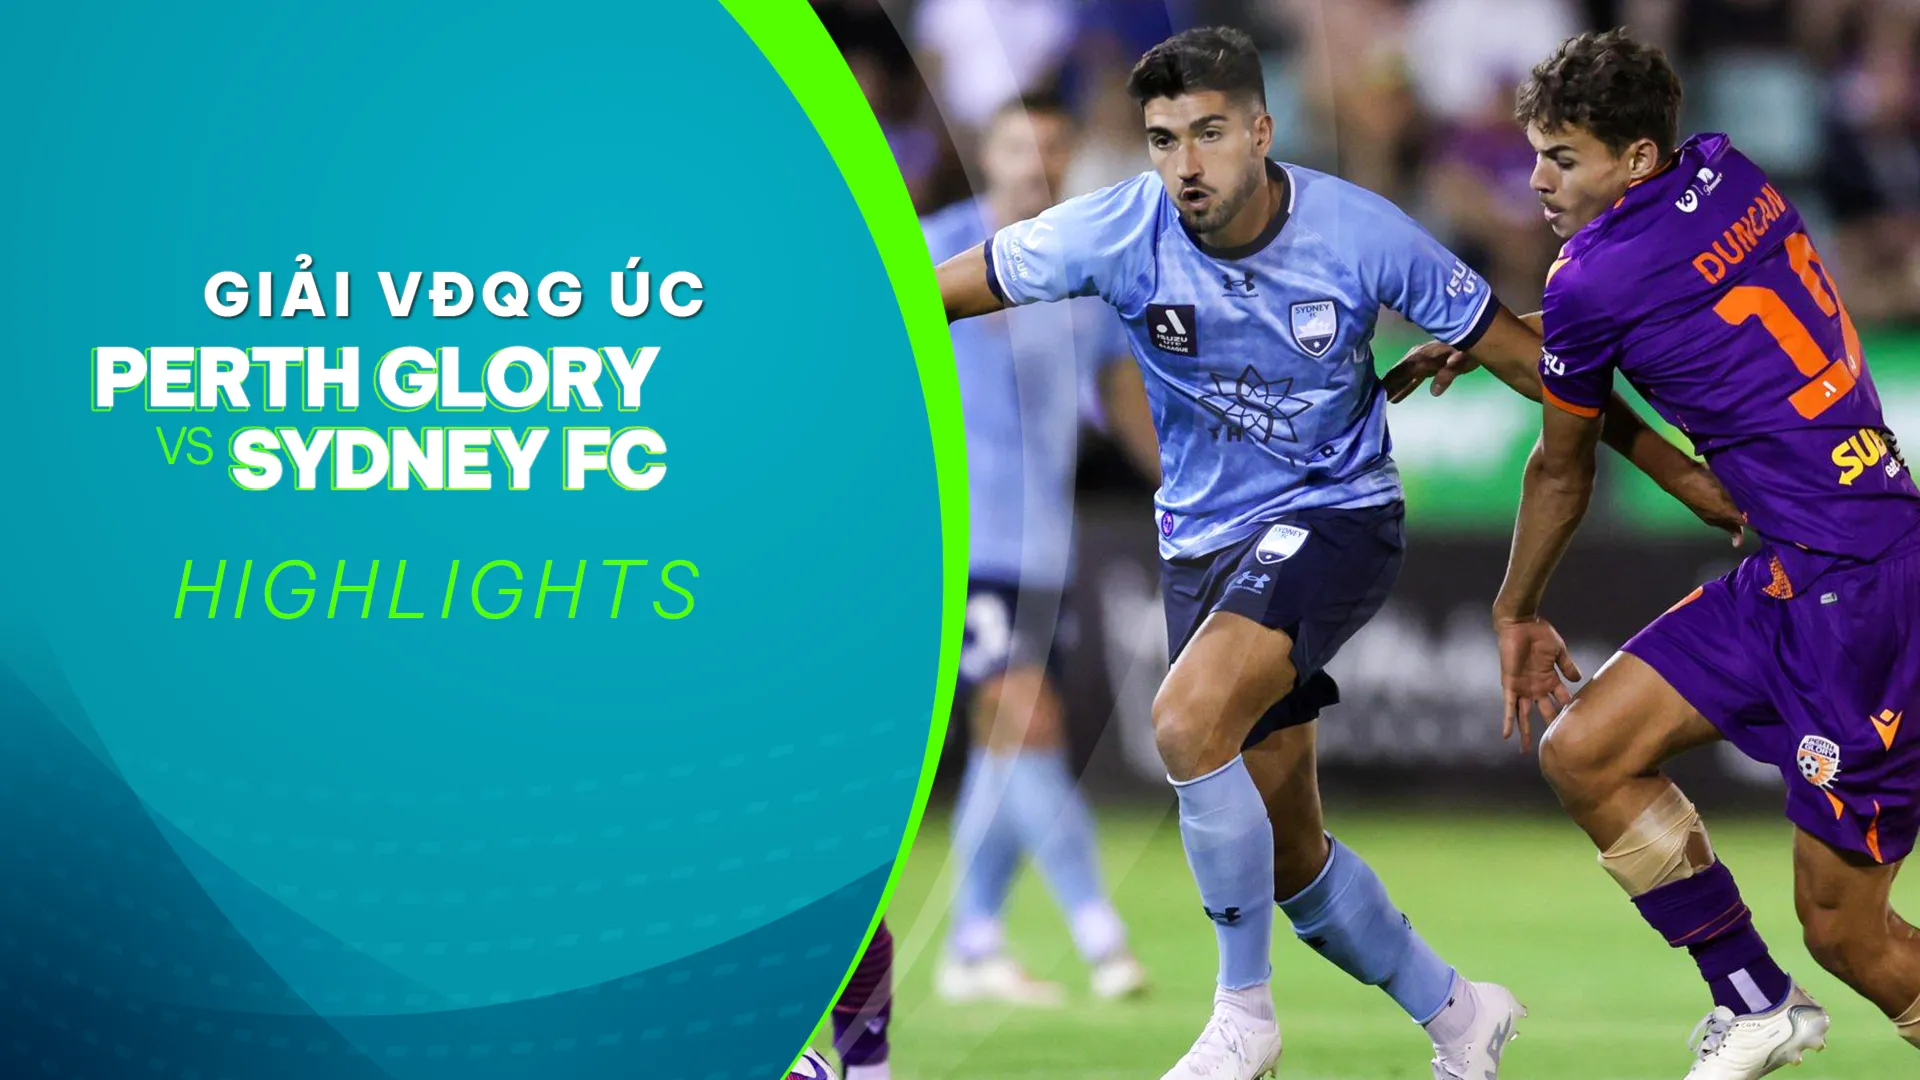 Highlights Perth Glory - Sydney FC (Vòng 12 - Giải VĐQG Úc 2022/23)